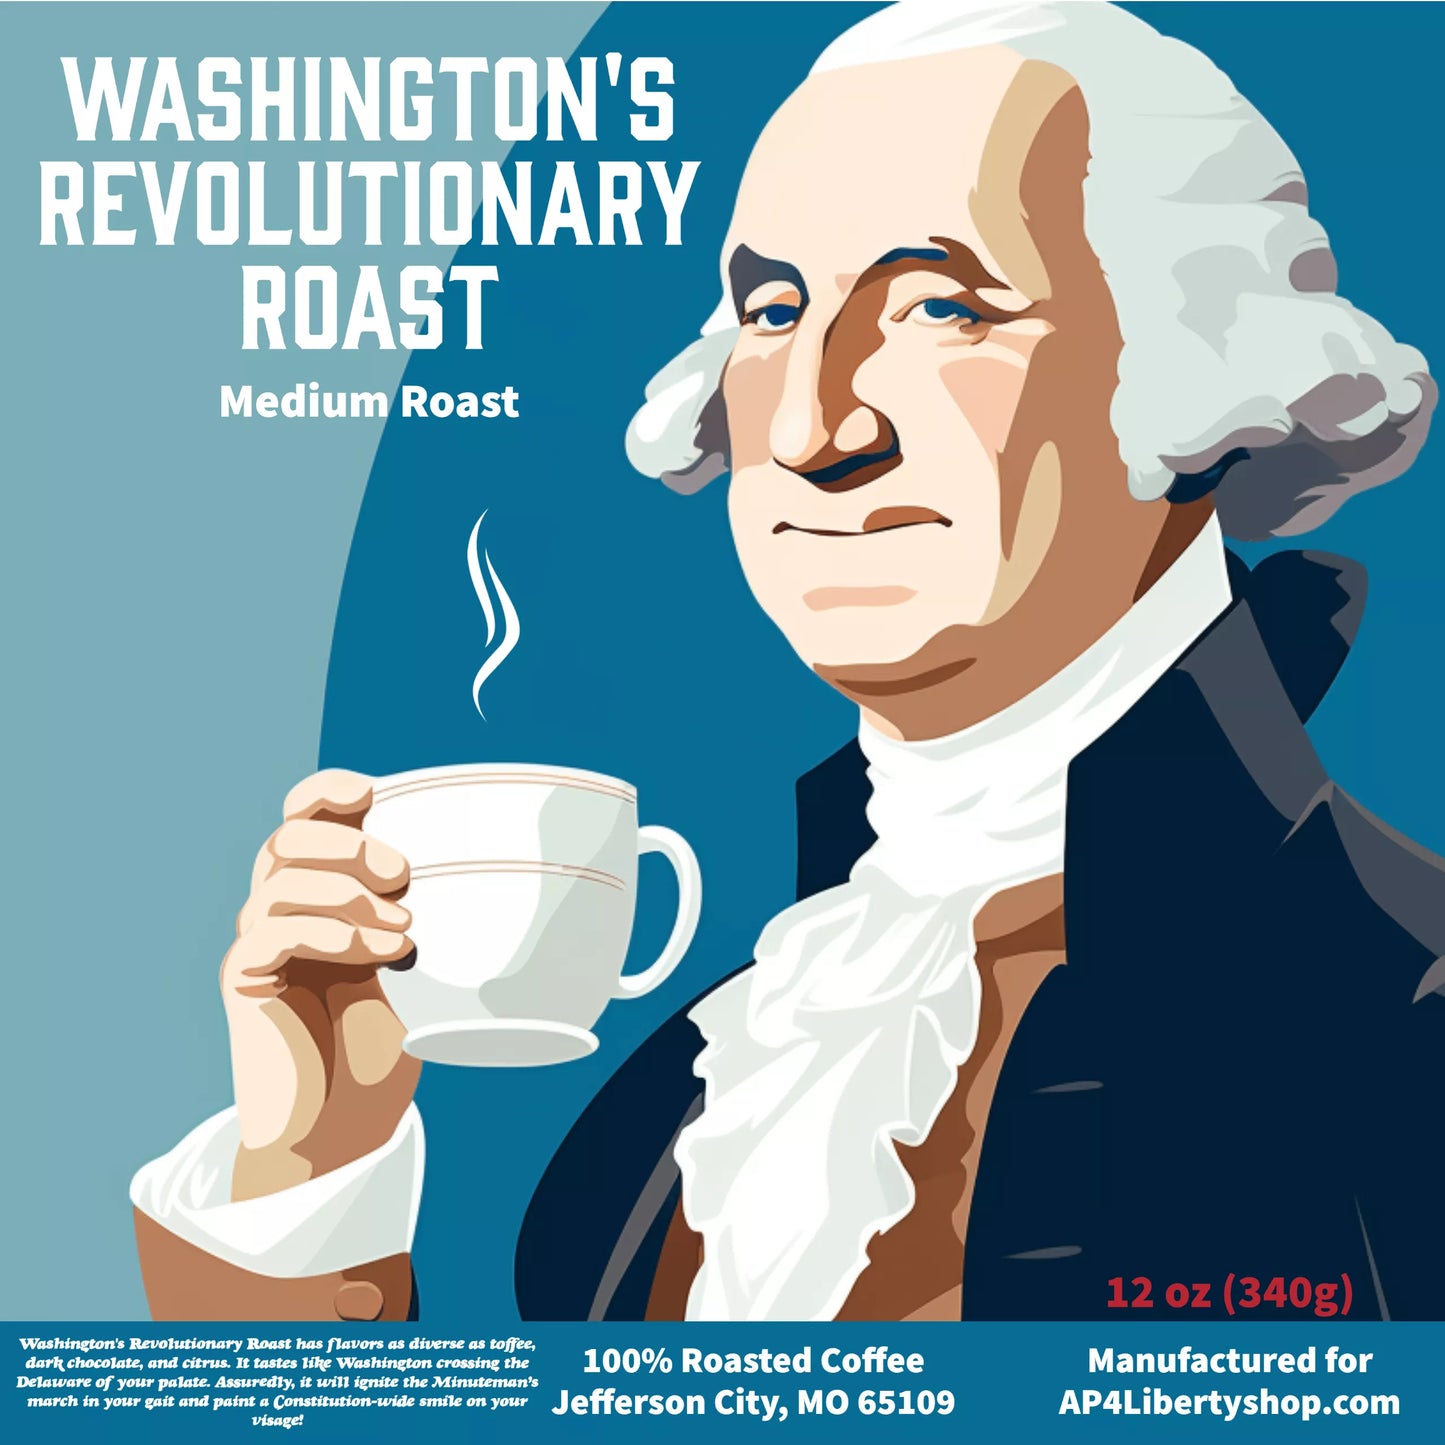 Washington's Revolutionary Roast